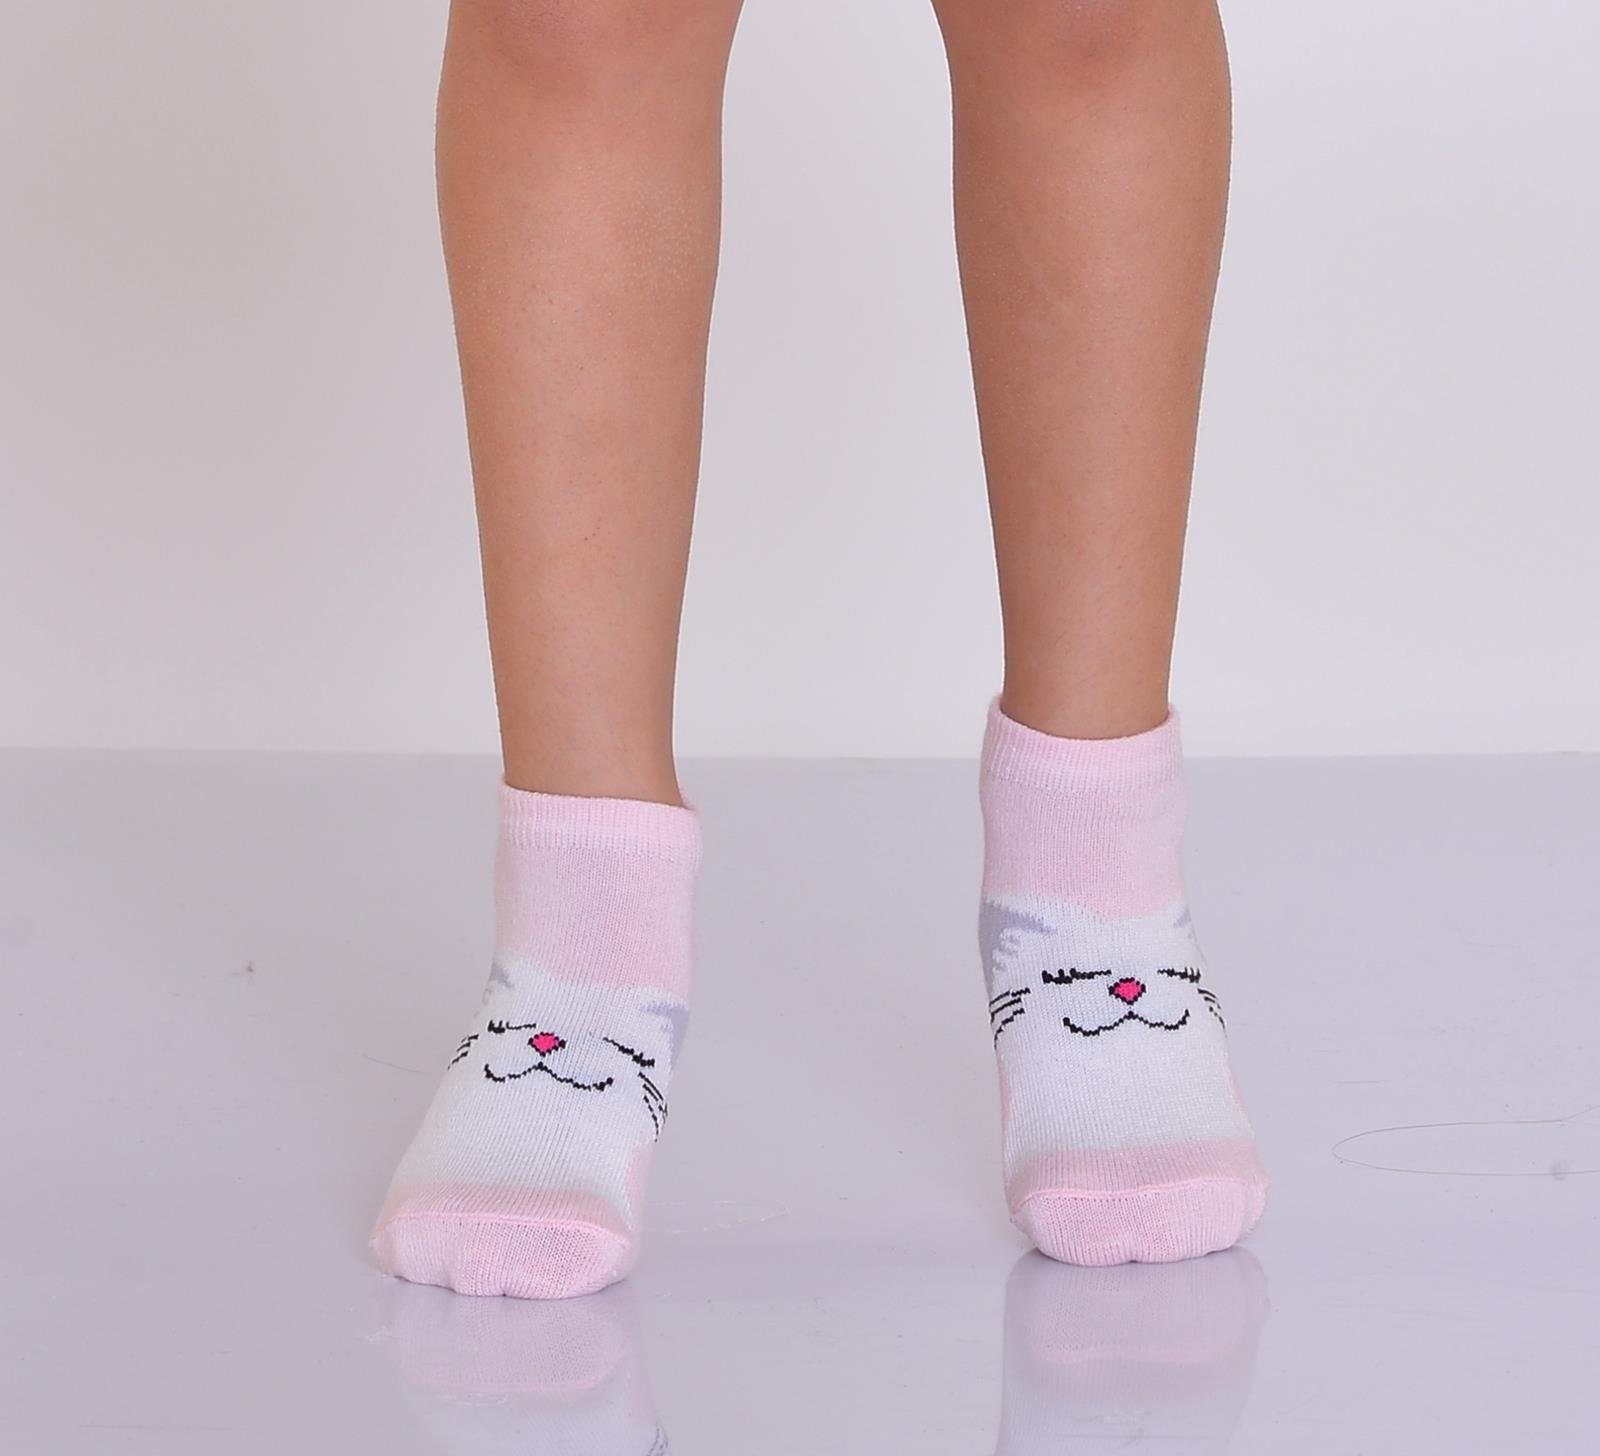 LOREZA Kurzsocken 12 Paar Mädchen Kindersocken Modell 12-Paar) Socken (Paar, 12-Paar Sneakersocken 4